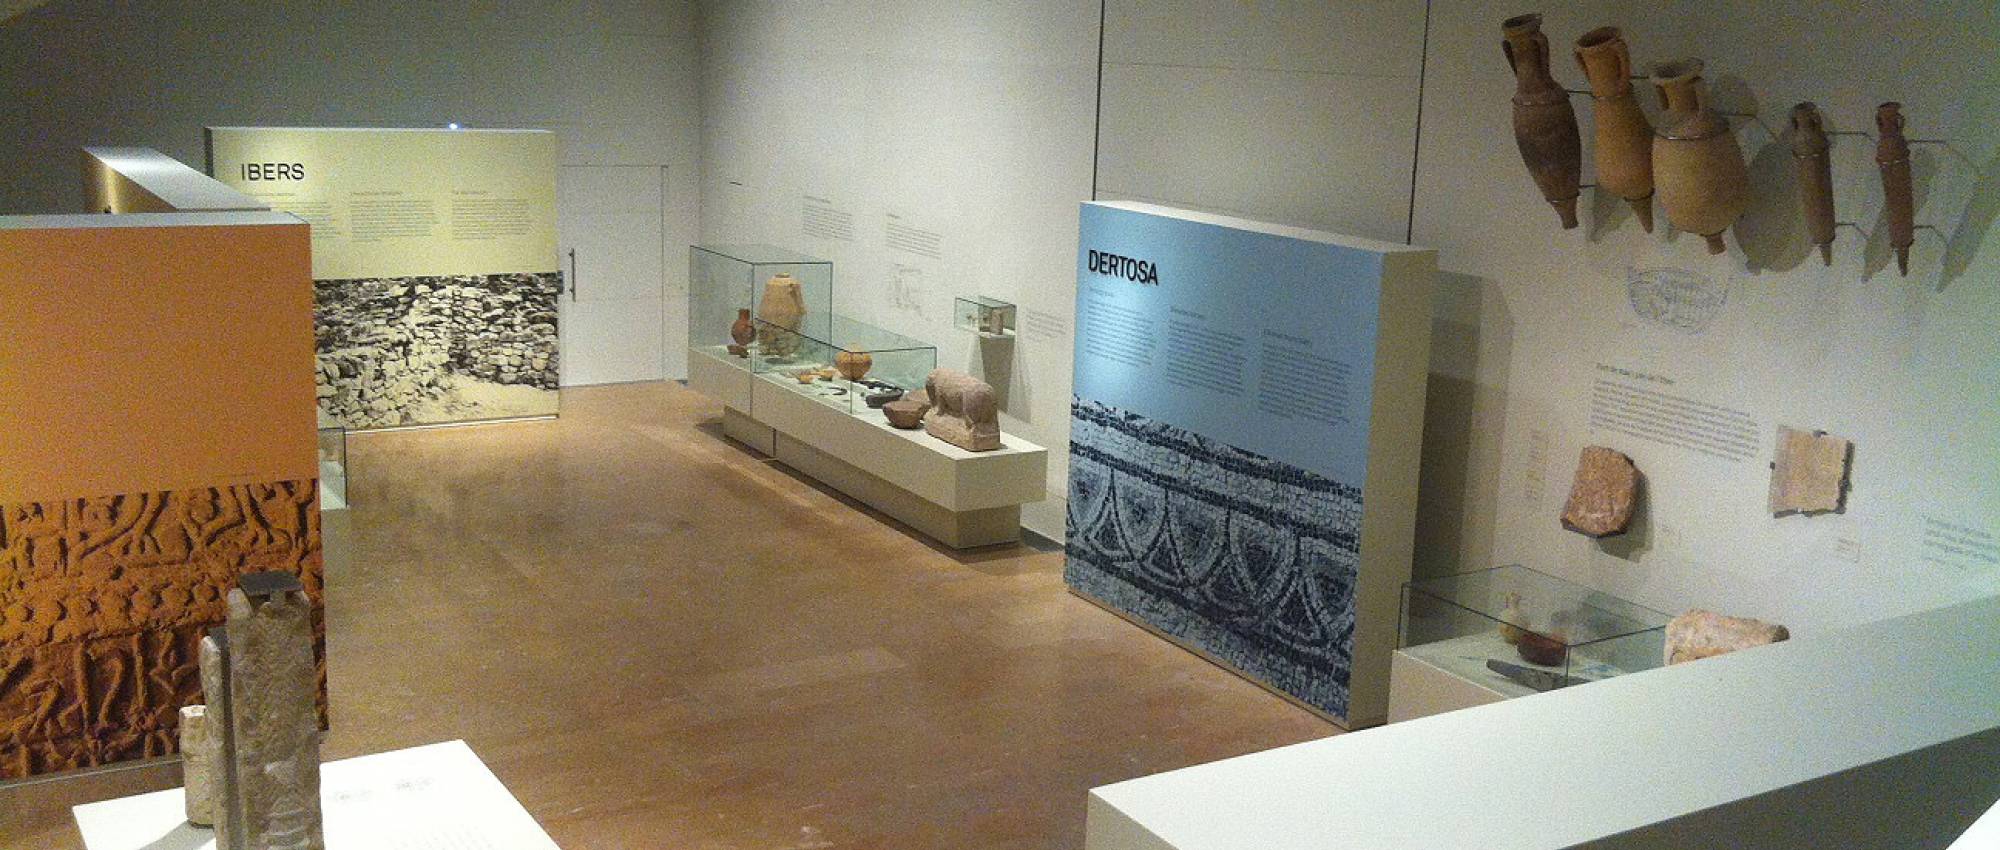 Detall de l'exposició del Museu de Tortorsa. CC BY-SA 4.0 - Kippelboy / Wikimedia Commons